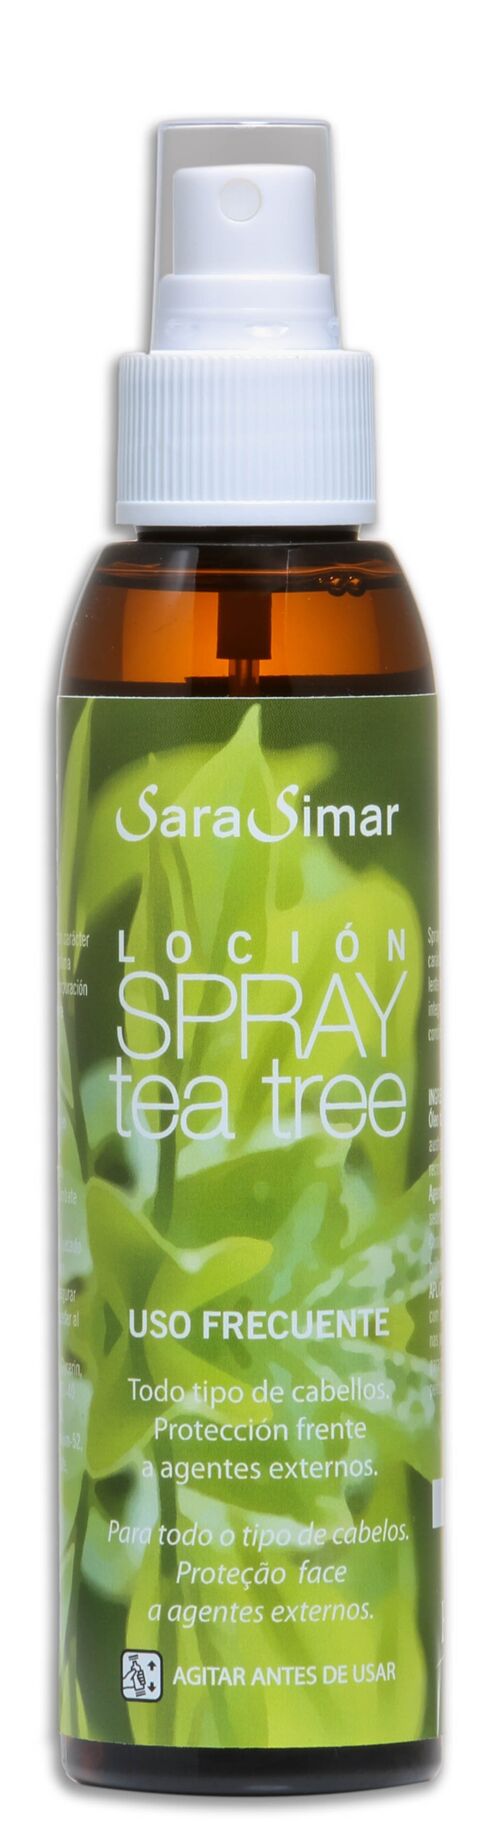 SARA SIMAR SPRAY LOCION TEA TREE, 125ml